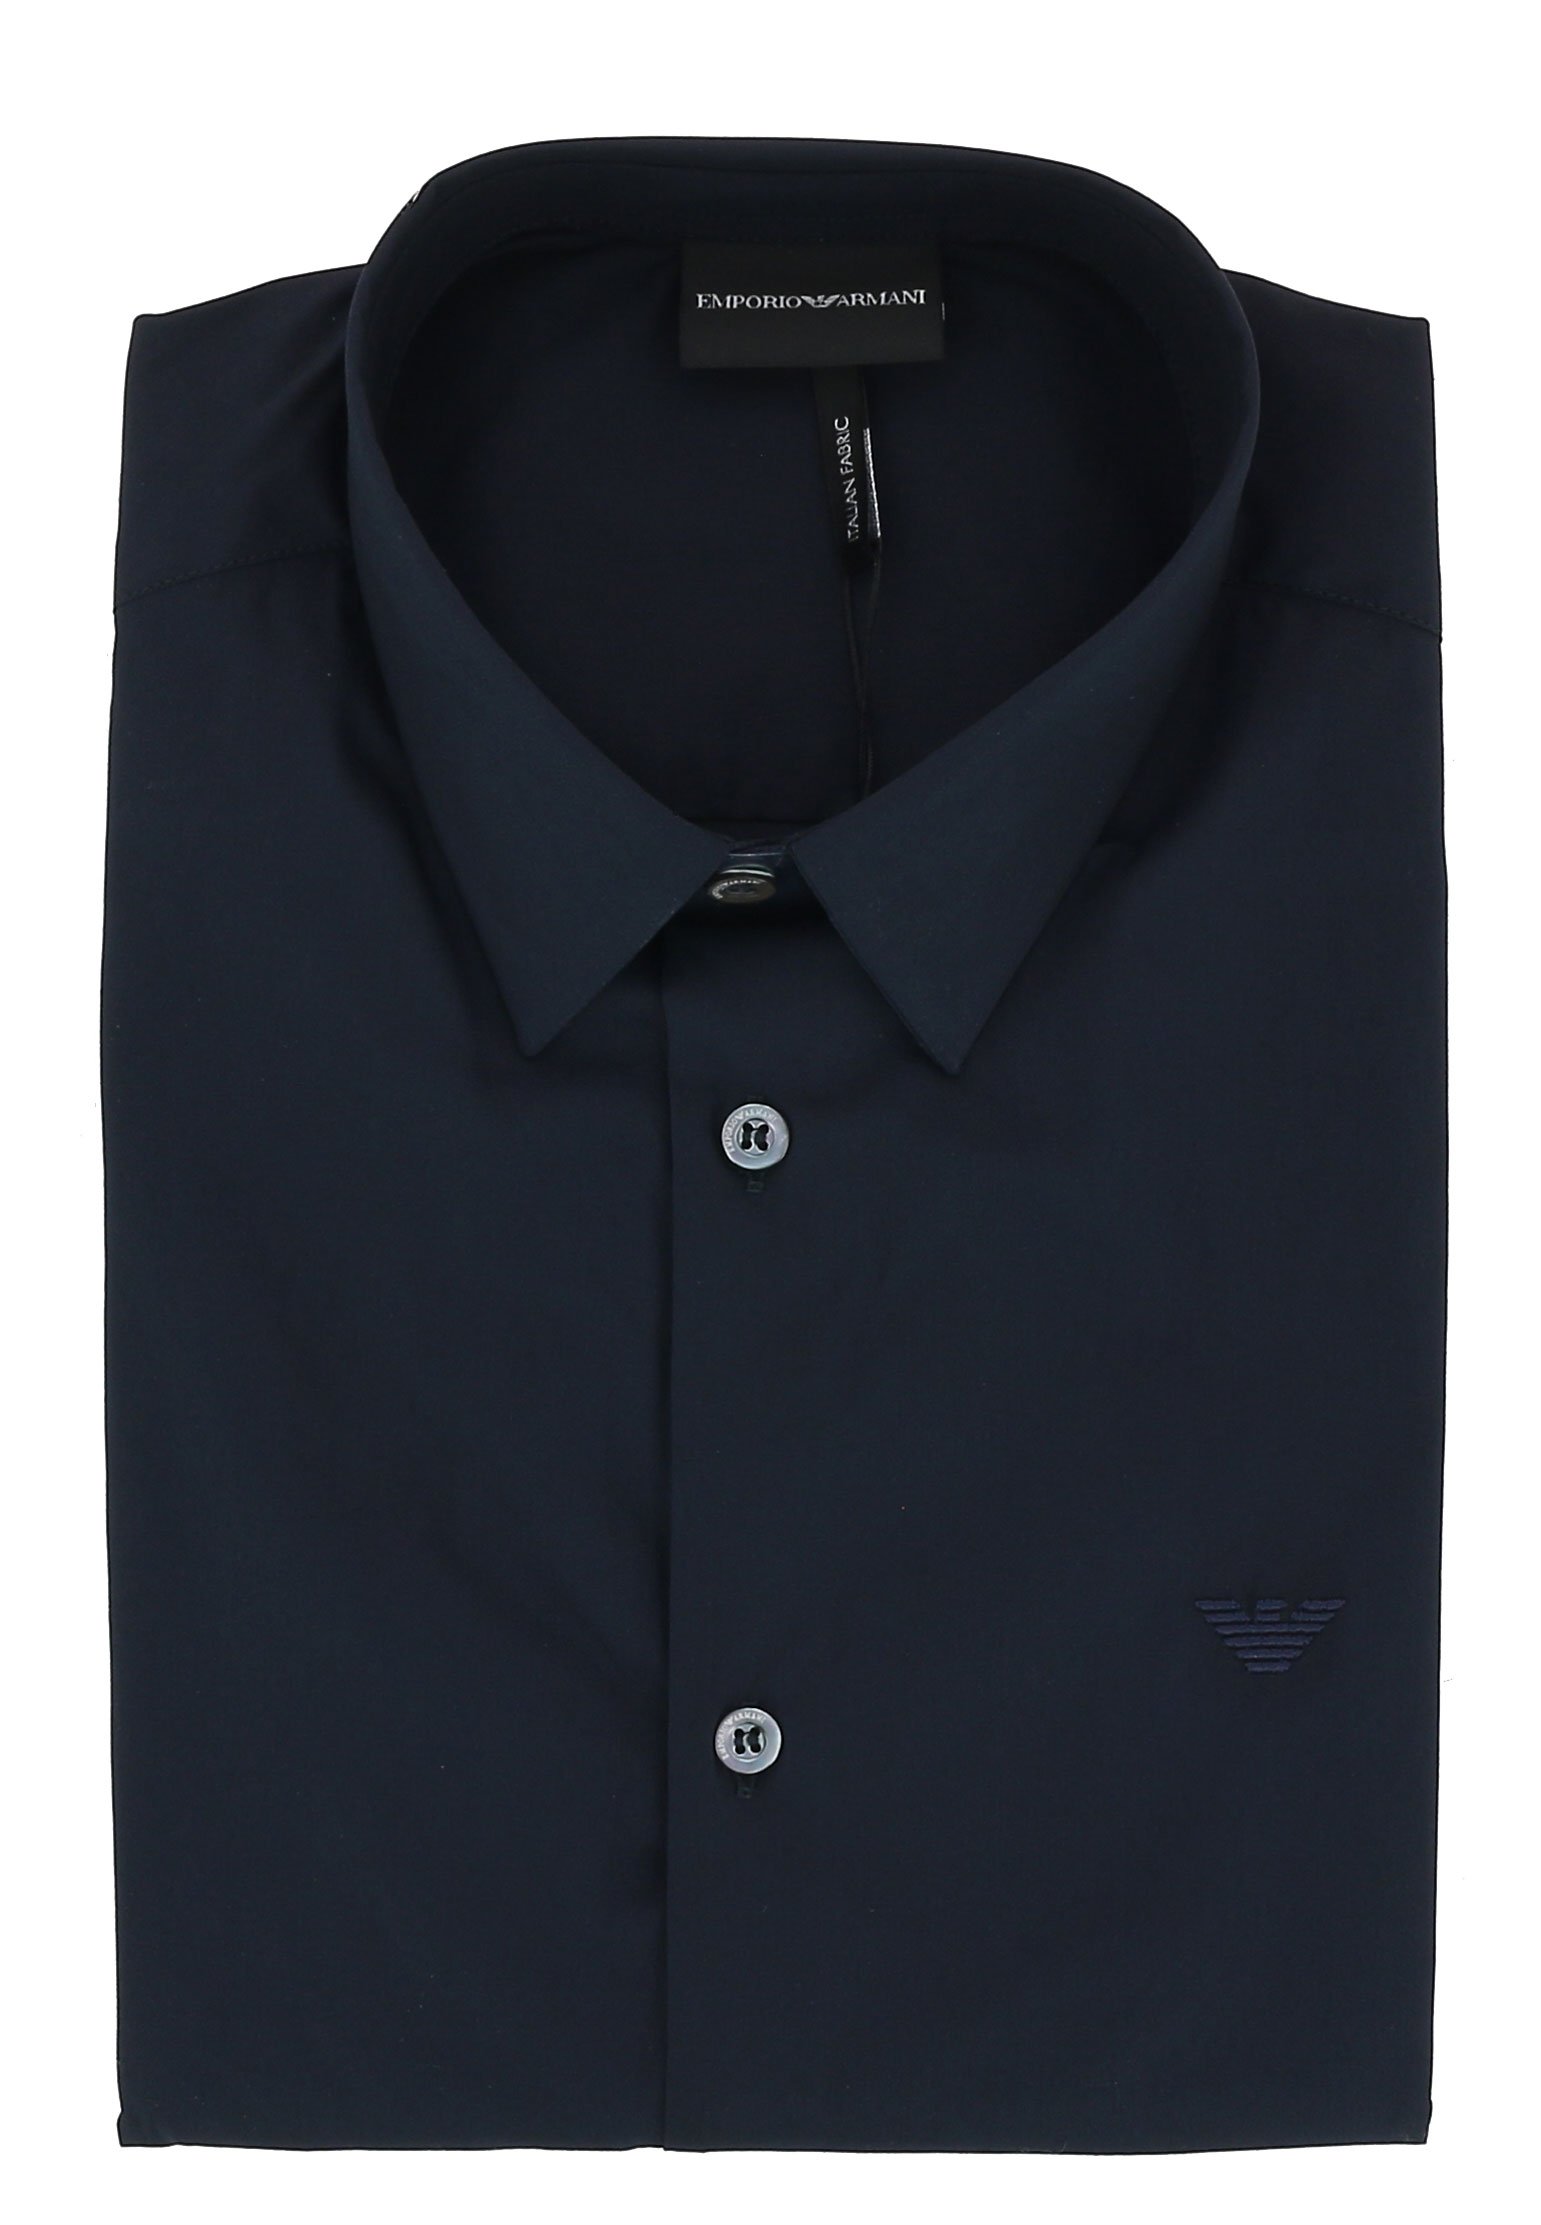 Рубашка мужская Emporio Armani 103005 синяя L